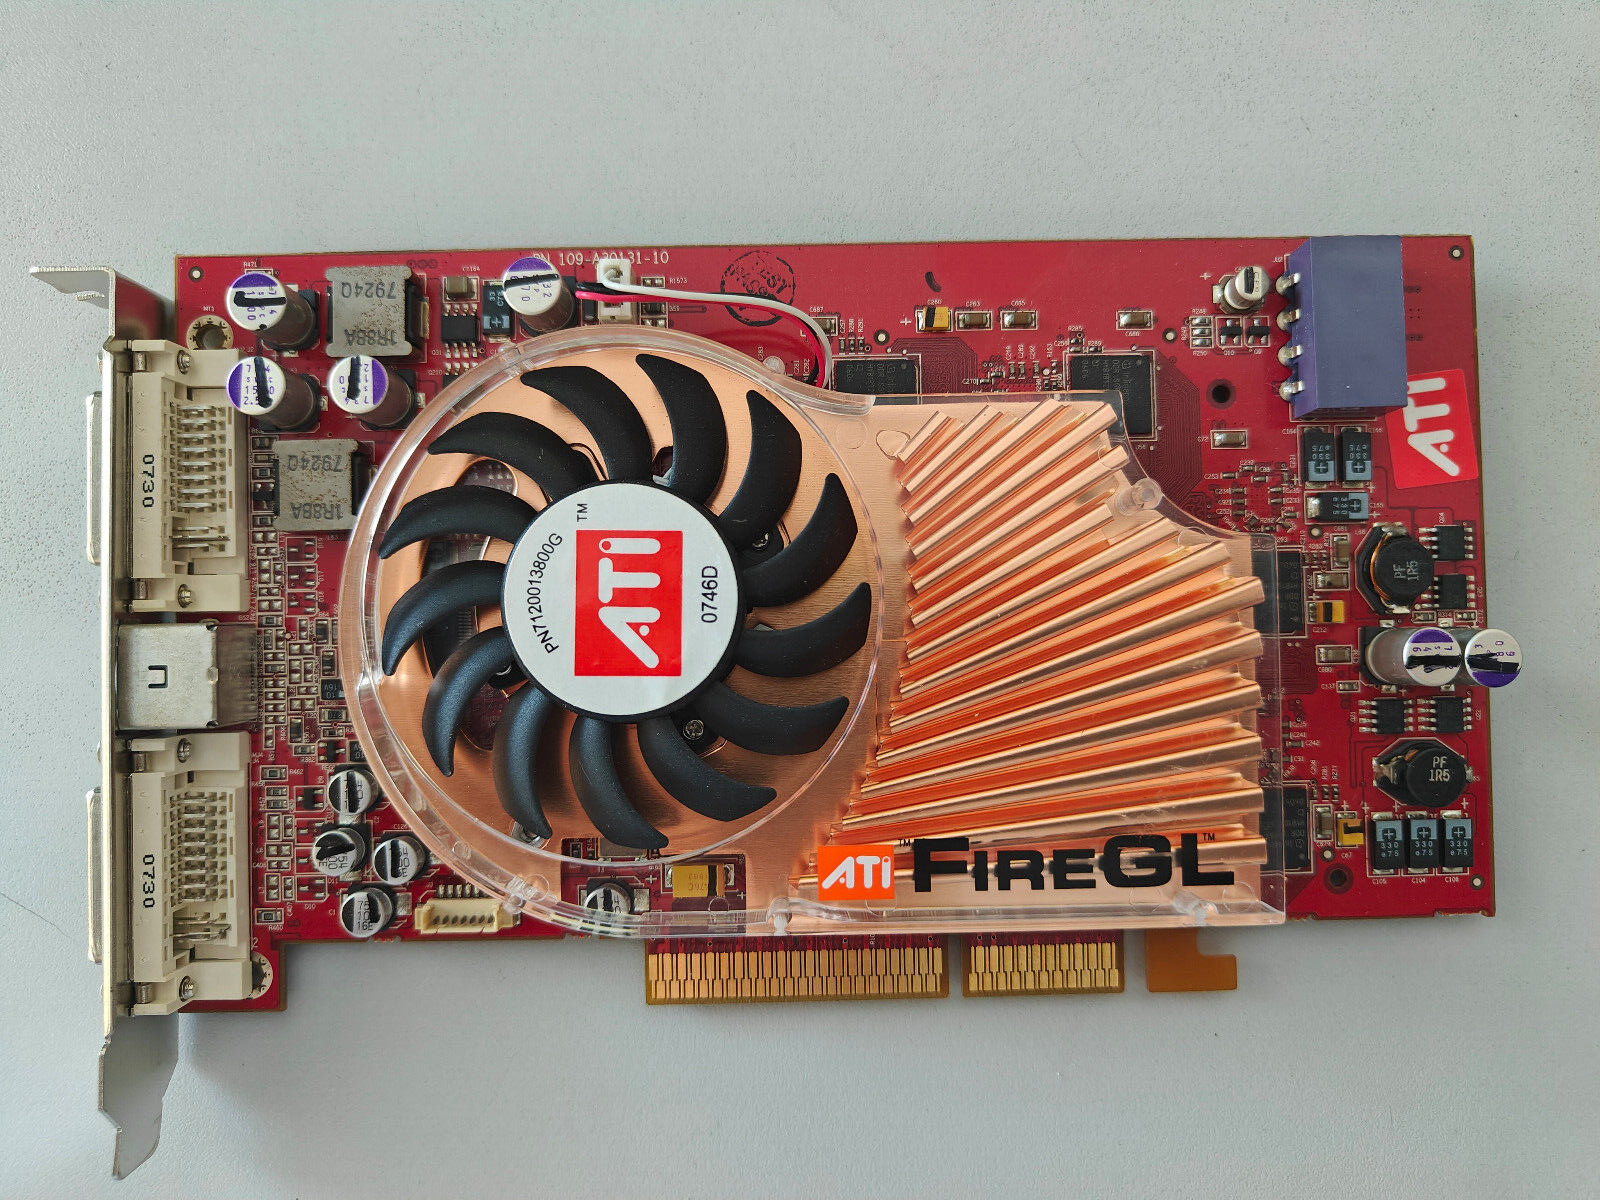 NEW ATI FireGL Fire GL X3 AGP Graphics Card 377846-002HP Spare P/N 404563-001